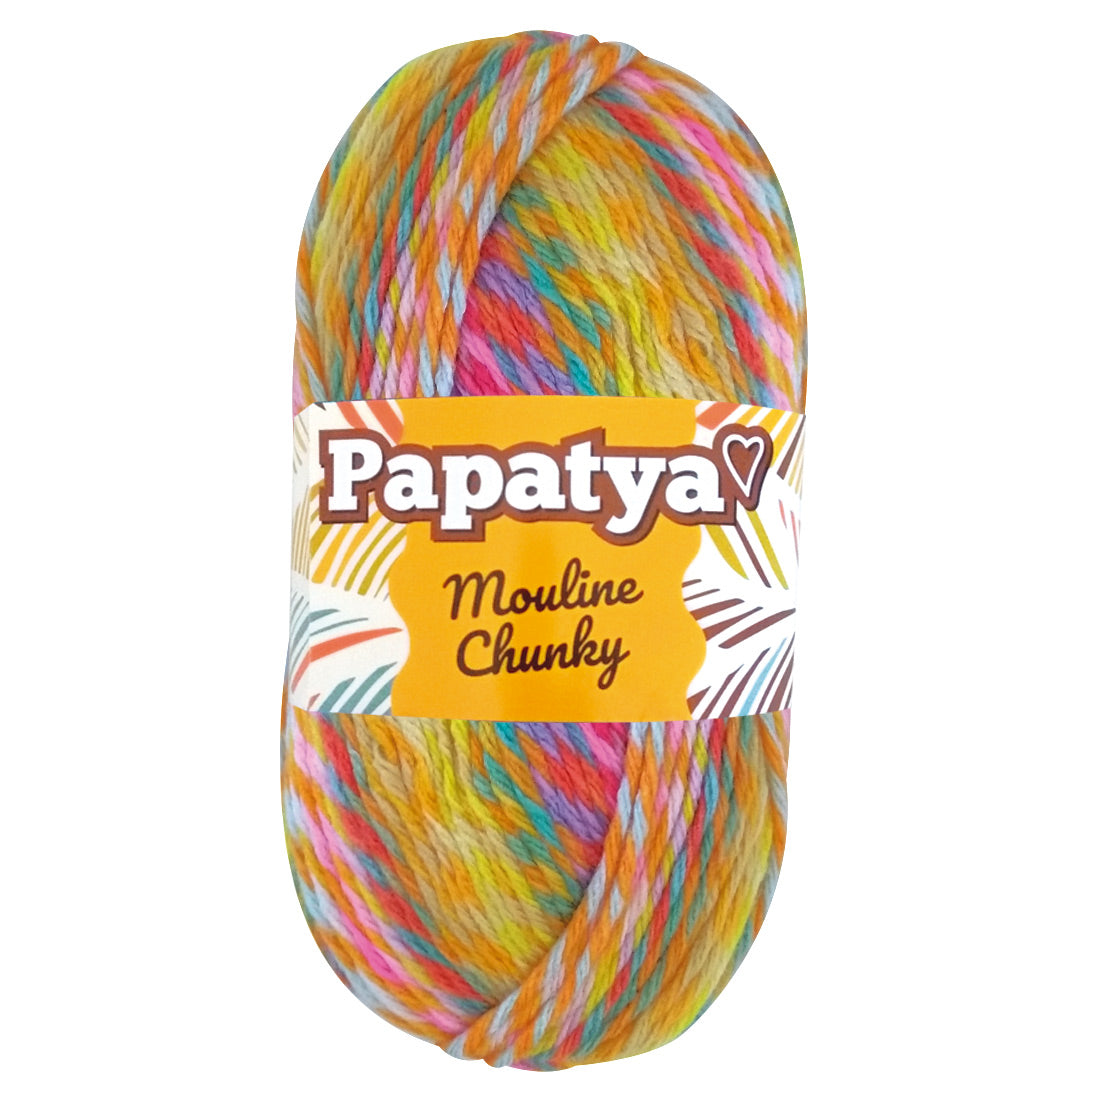 PAQUETE Estambre Papatya Mouline Chunky color 5351 , Marca Sweet Crochet, 5 madejas de 100g con 160m ⭐